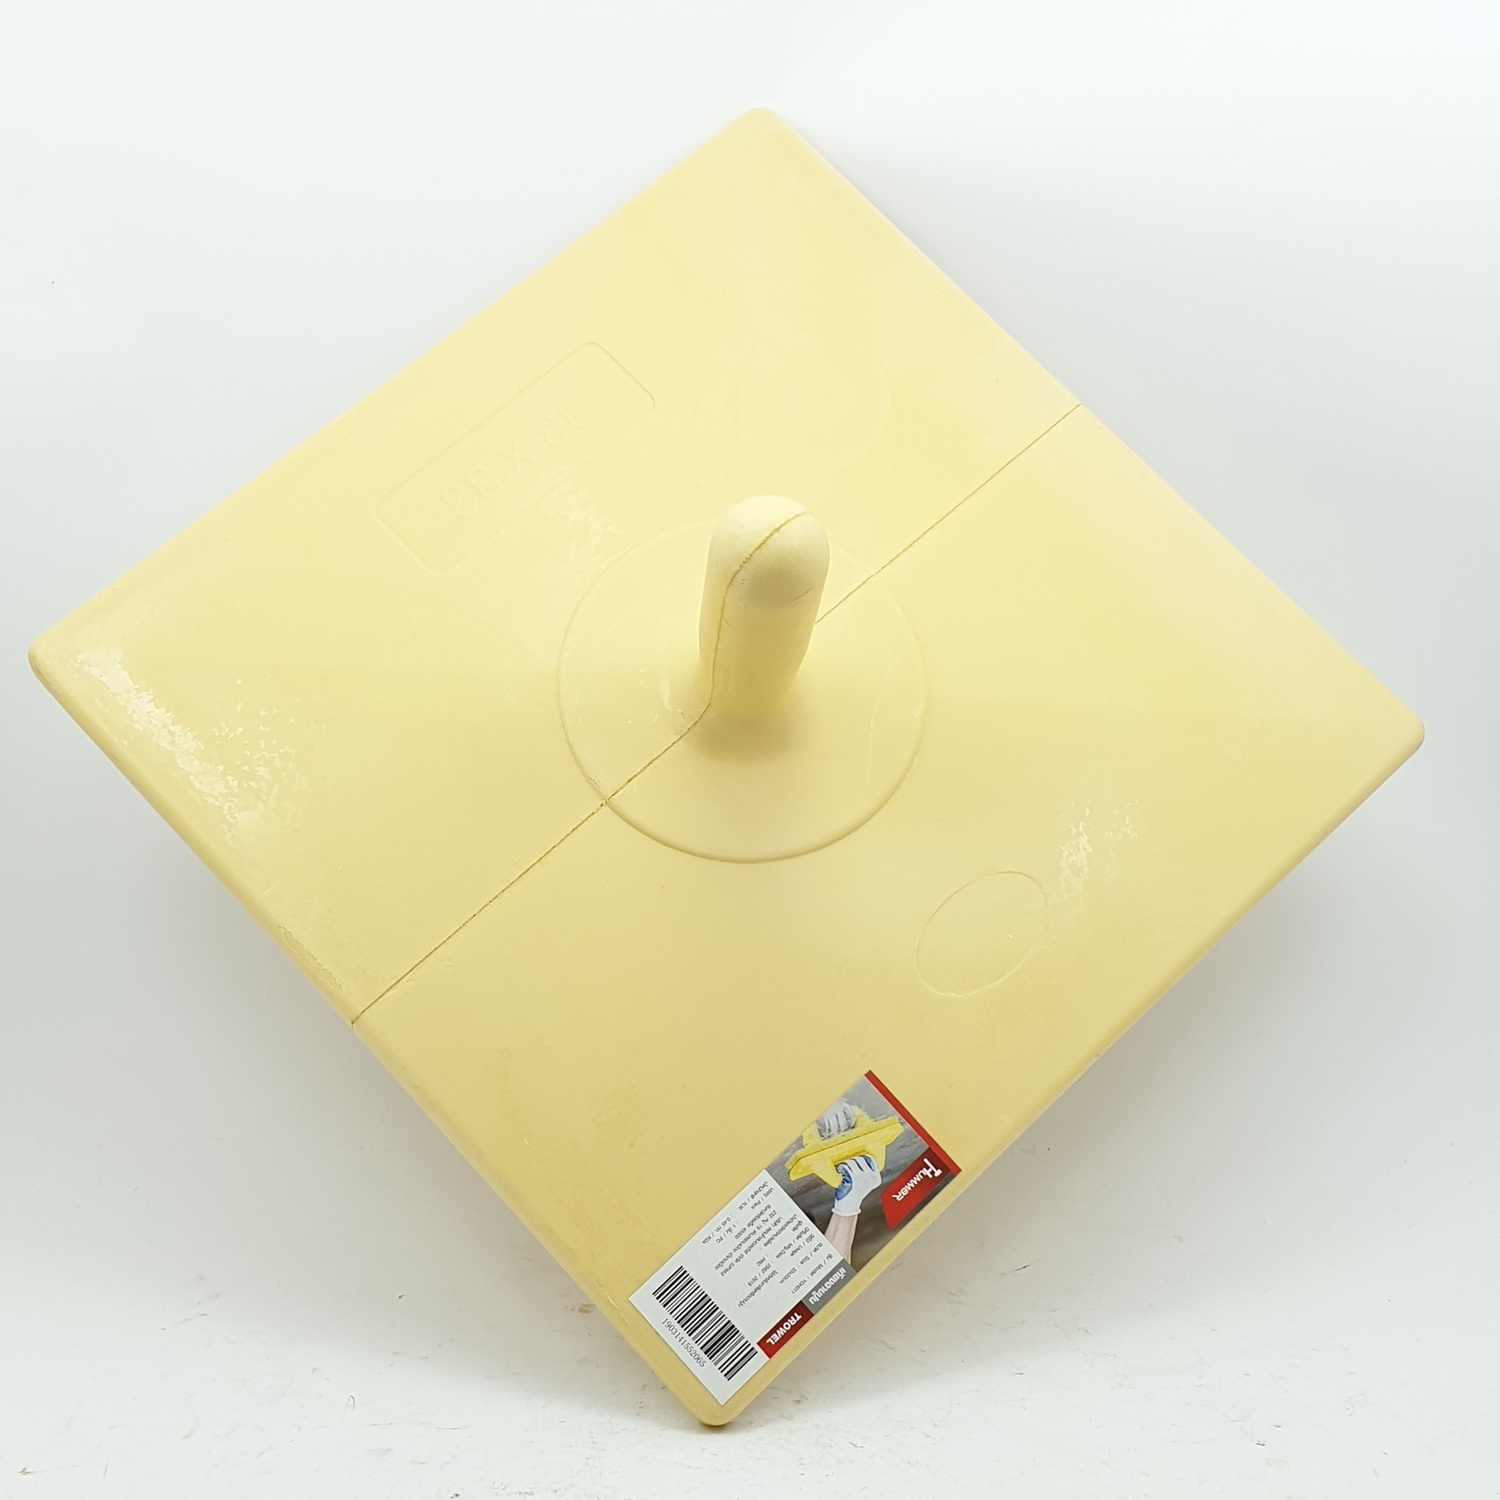 HUMMER เกียงฉาบปูน ขนาด 33x33 ซม. ํYDH011 สีเหลือง